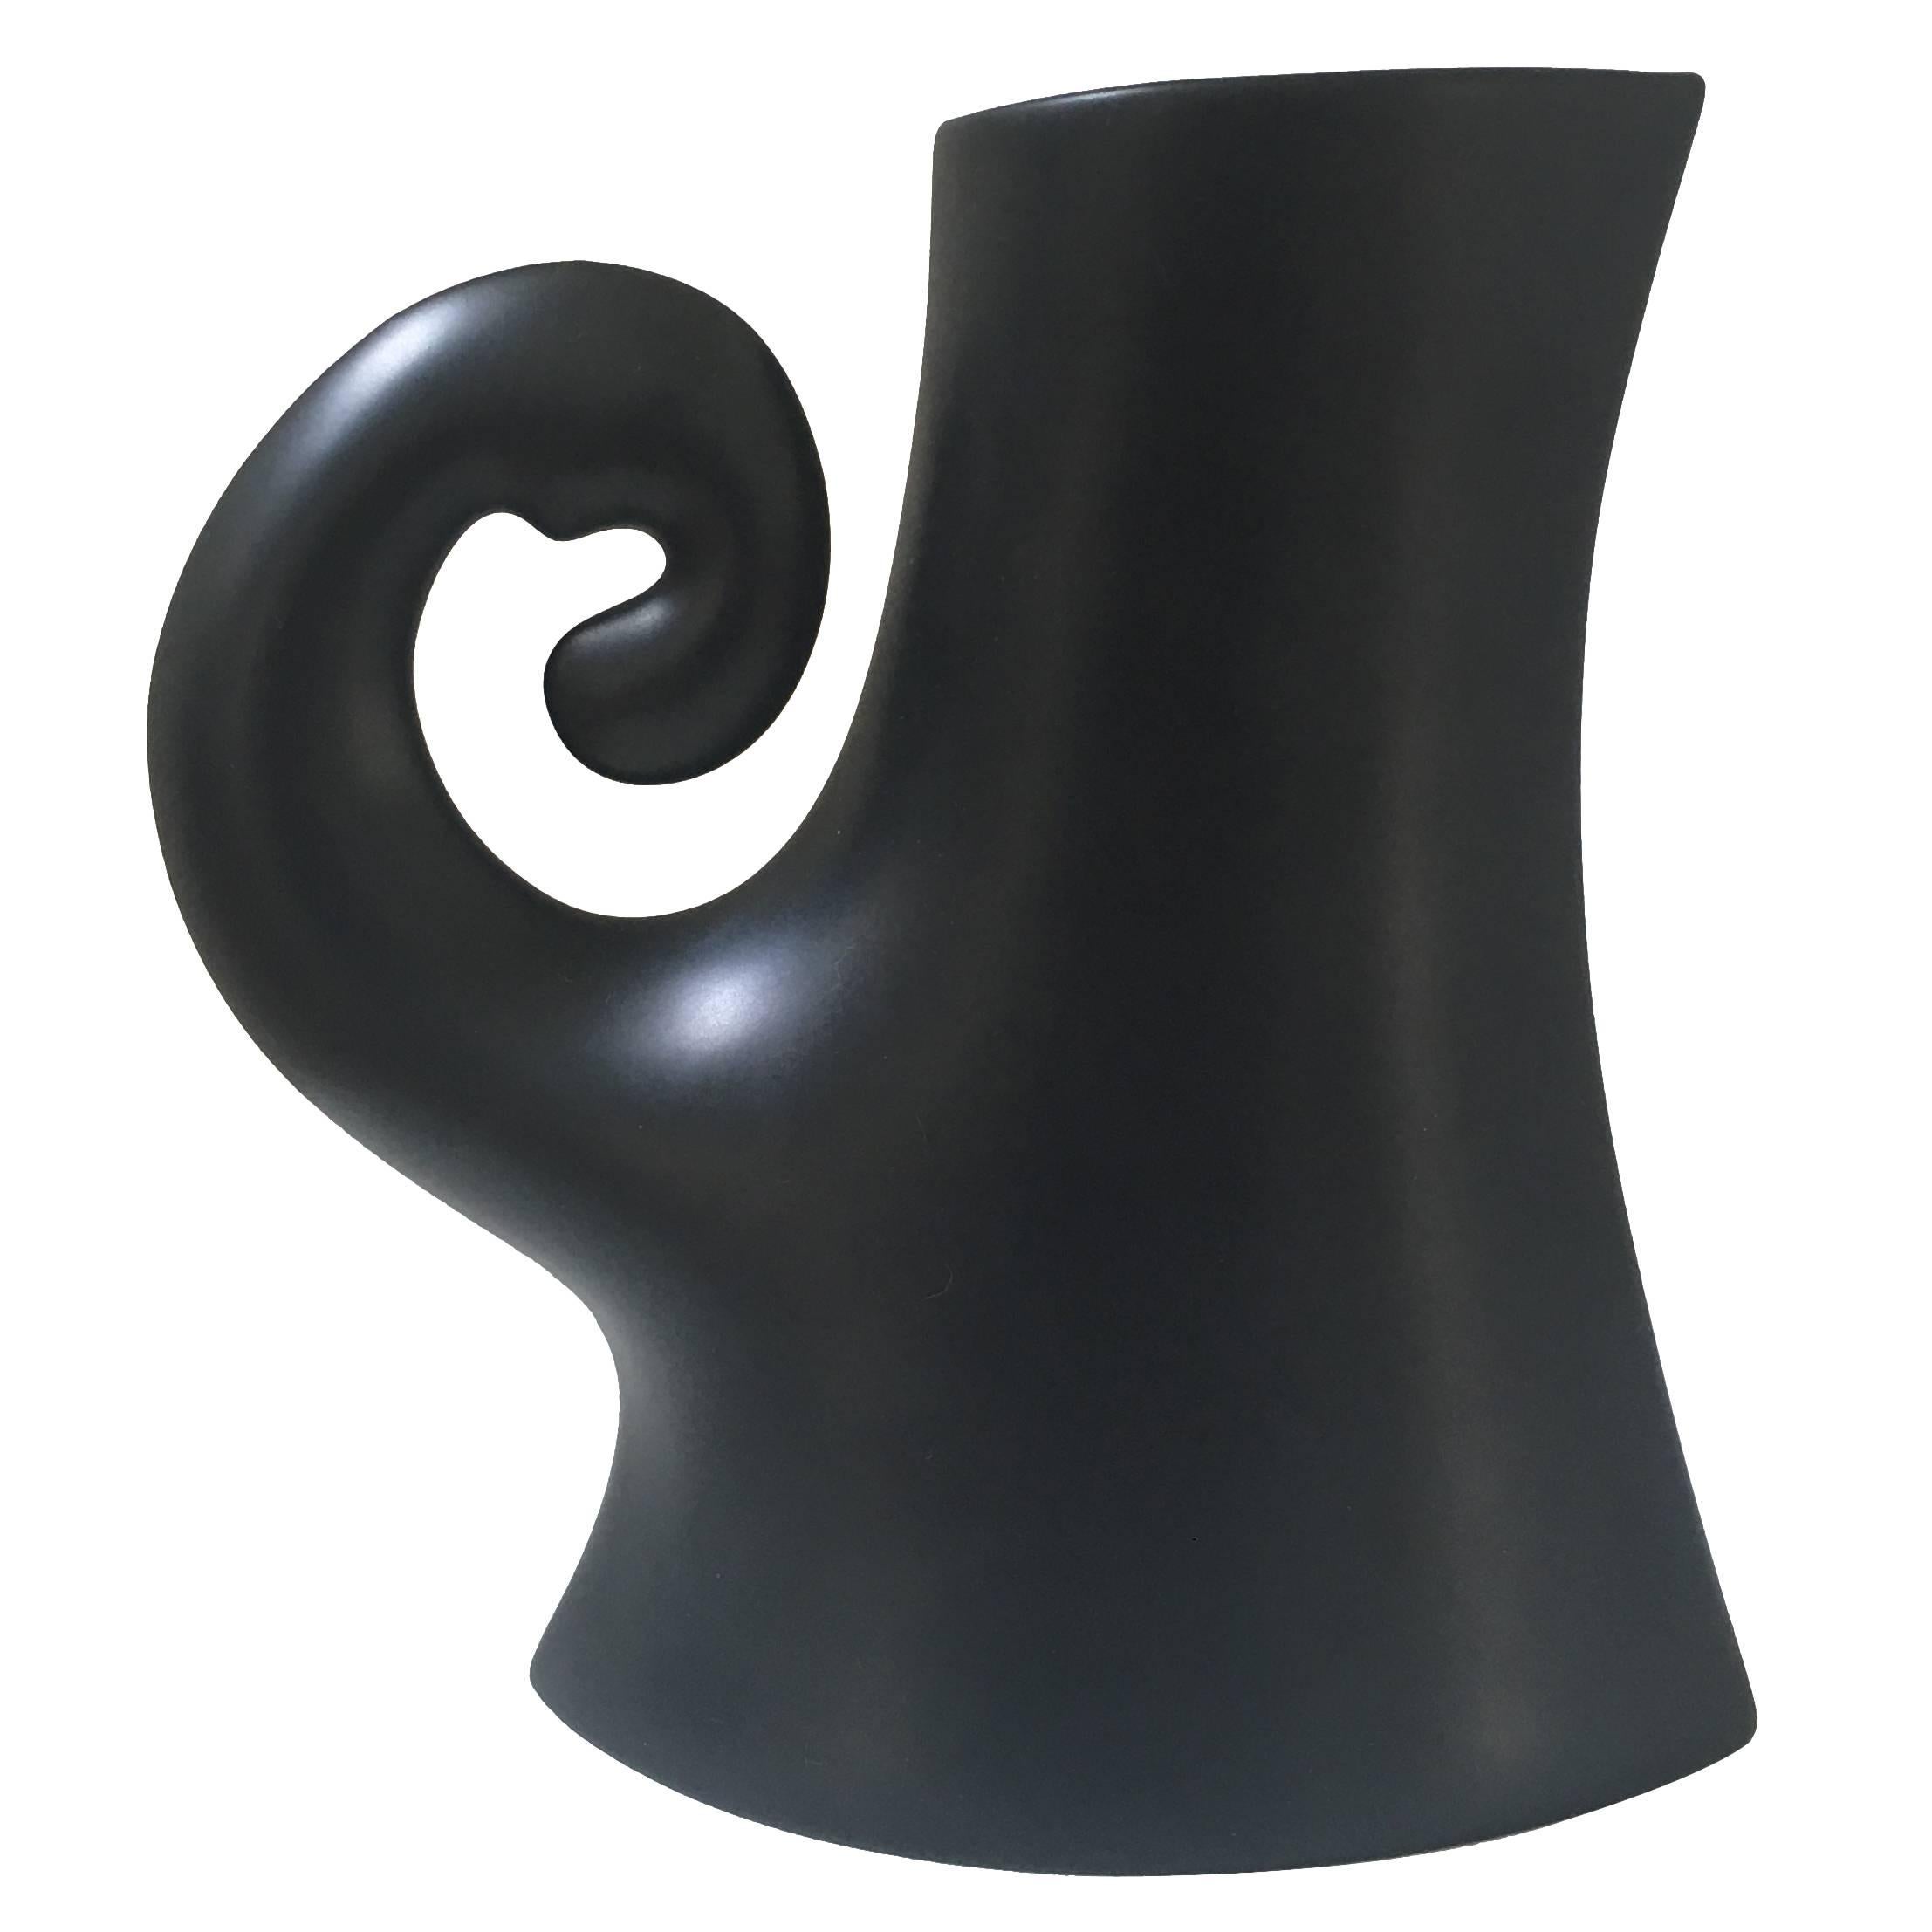 Rosenthal Studio-Line Black Sculptural Ceramic Pitcher For Sale